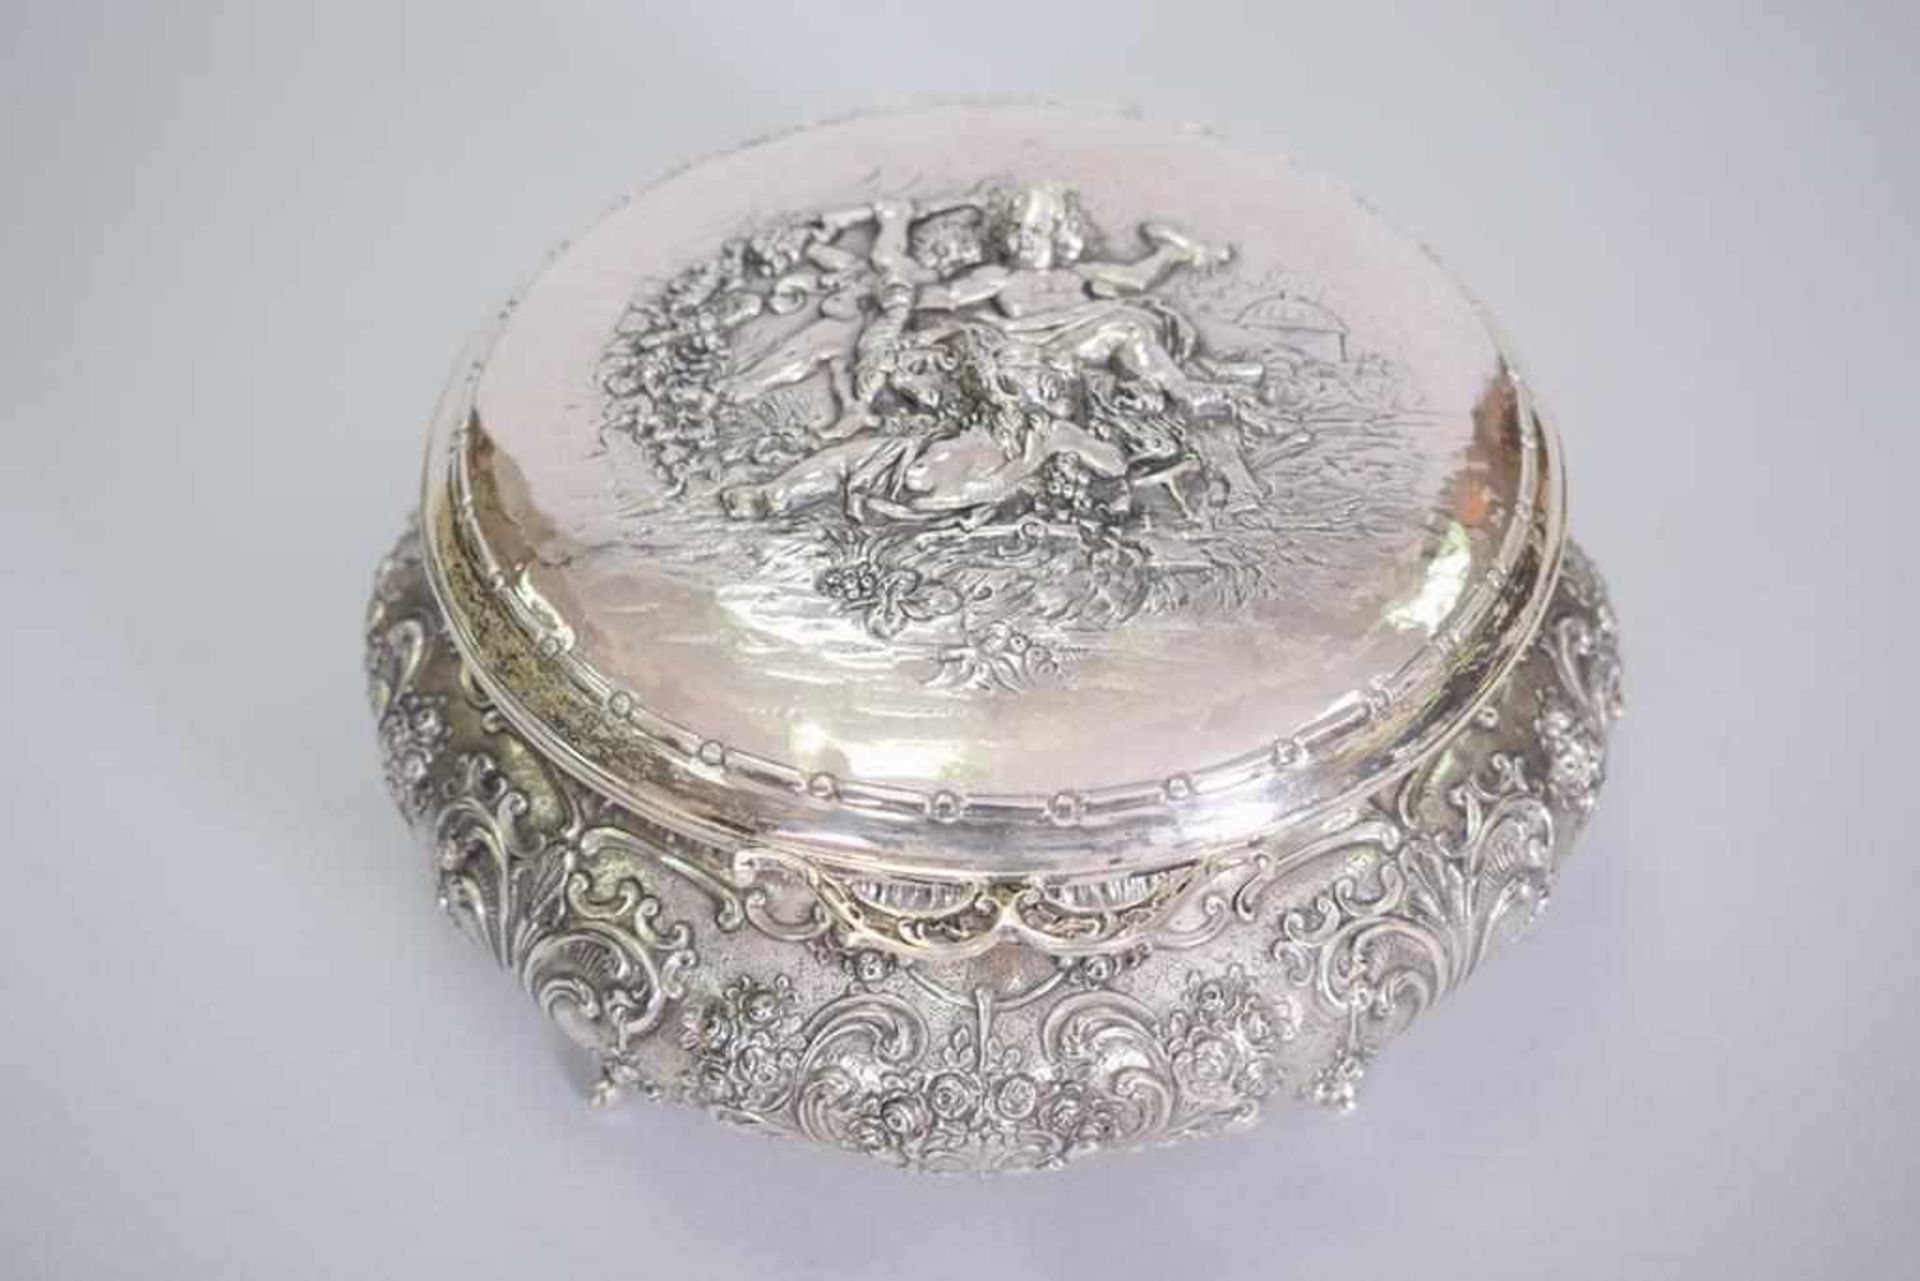 Große Silberdose mit Putti800 Silber, innen vergoldet, feine Handarbeit, Gewicht: 888 g, Maße: